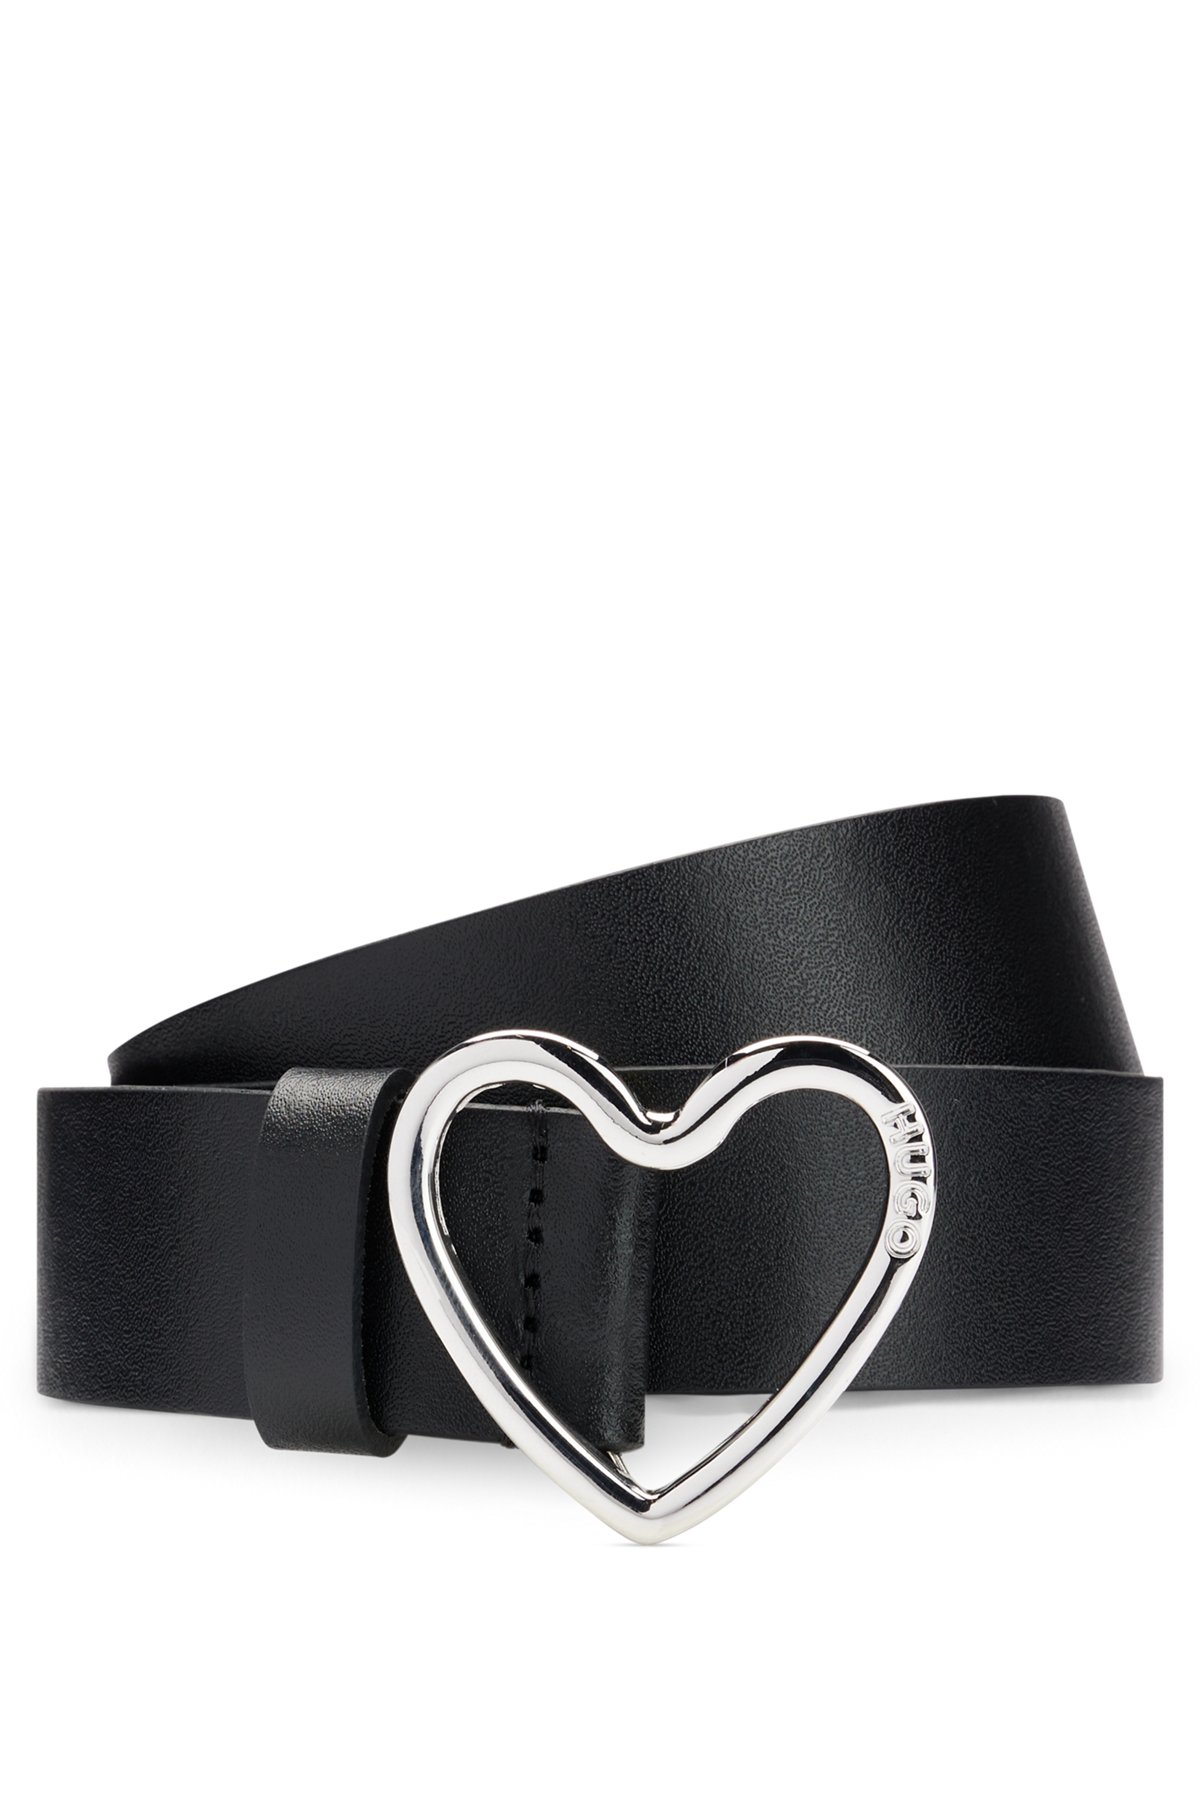 Cintura in pelle italiana con fibbia a forma di cuore brandizzata, Nero